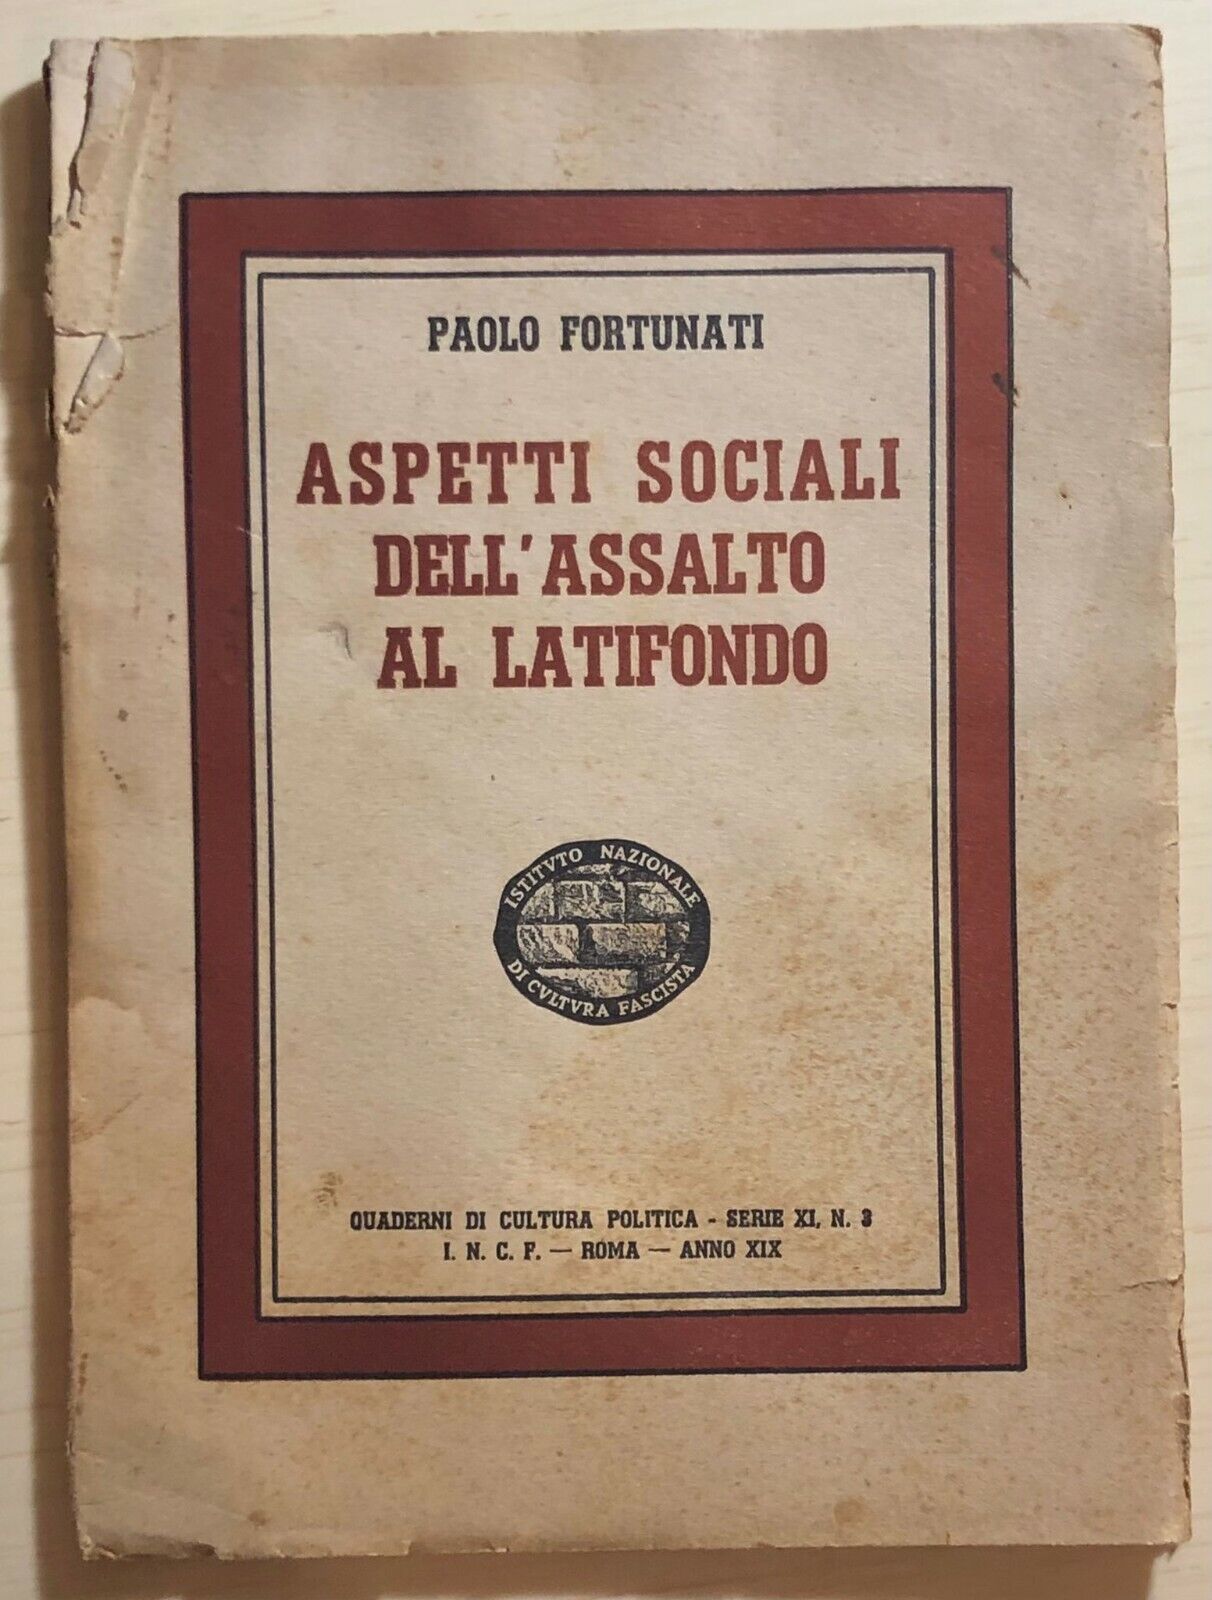 Aspetti sociali delL'assalto al latifondo di Paolo Fortunati, 1941, Incf